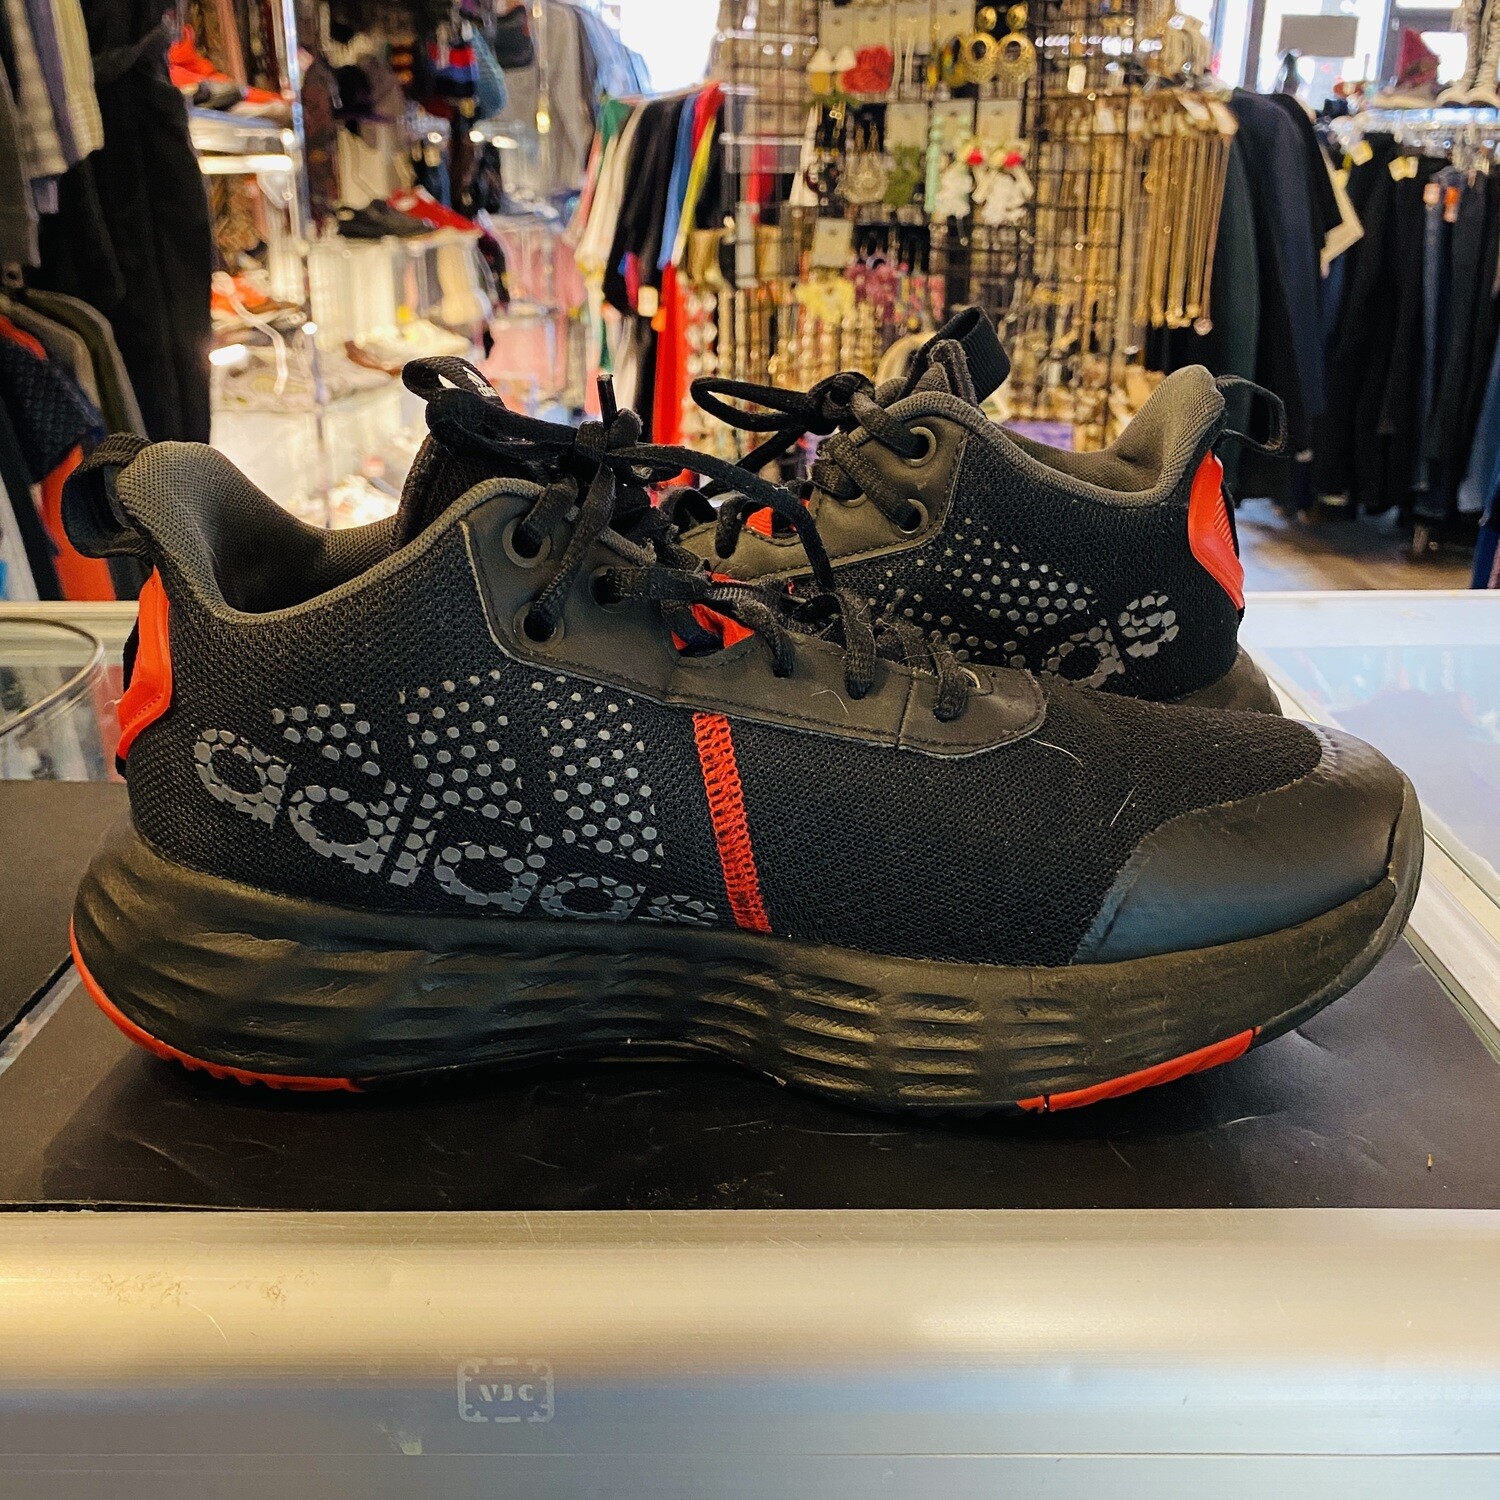 Size 8 Adidas Ownthegame 2.0 Basketball Shoe